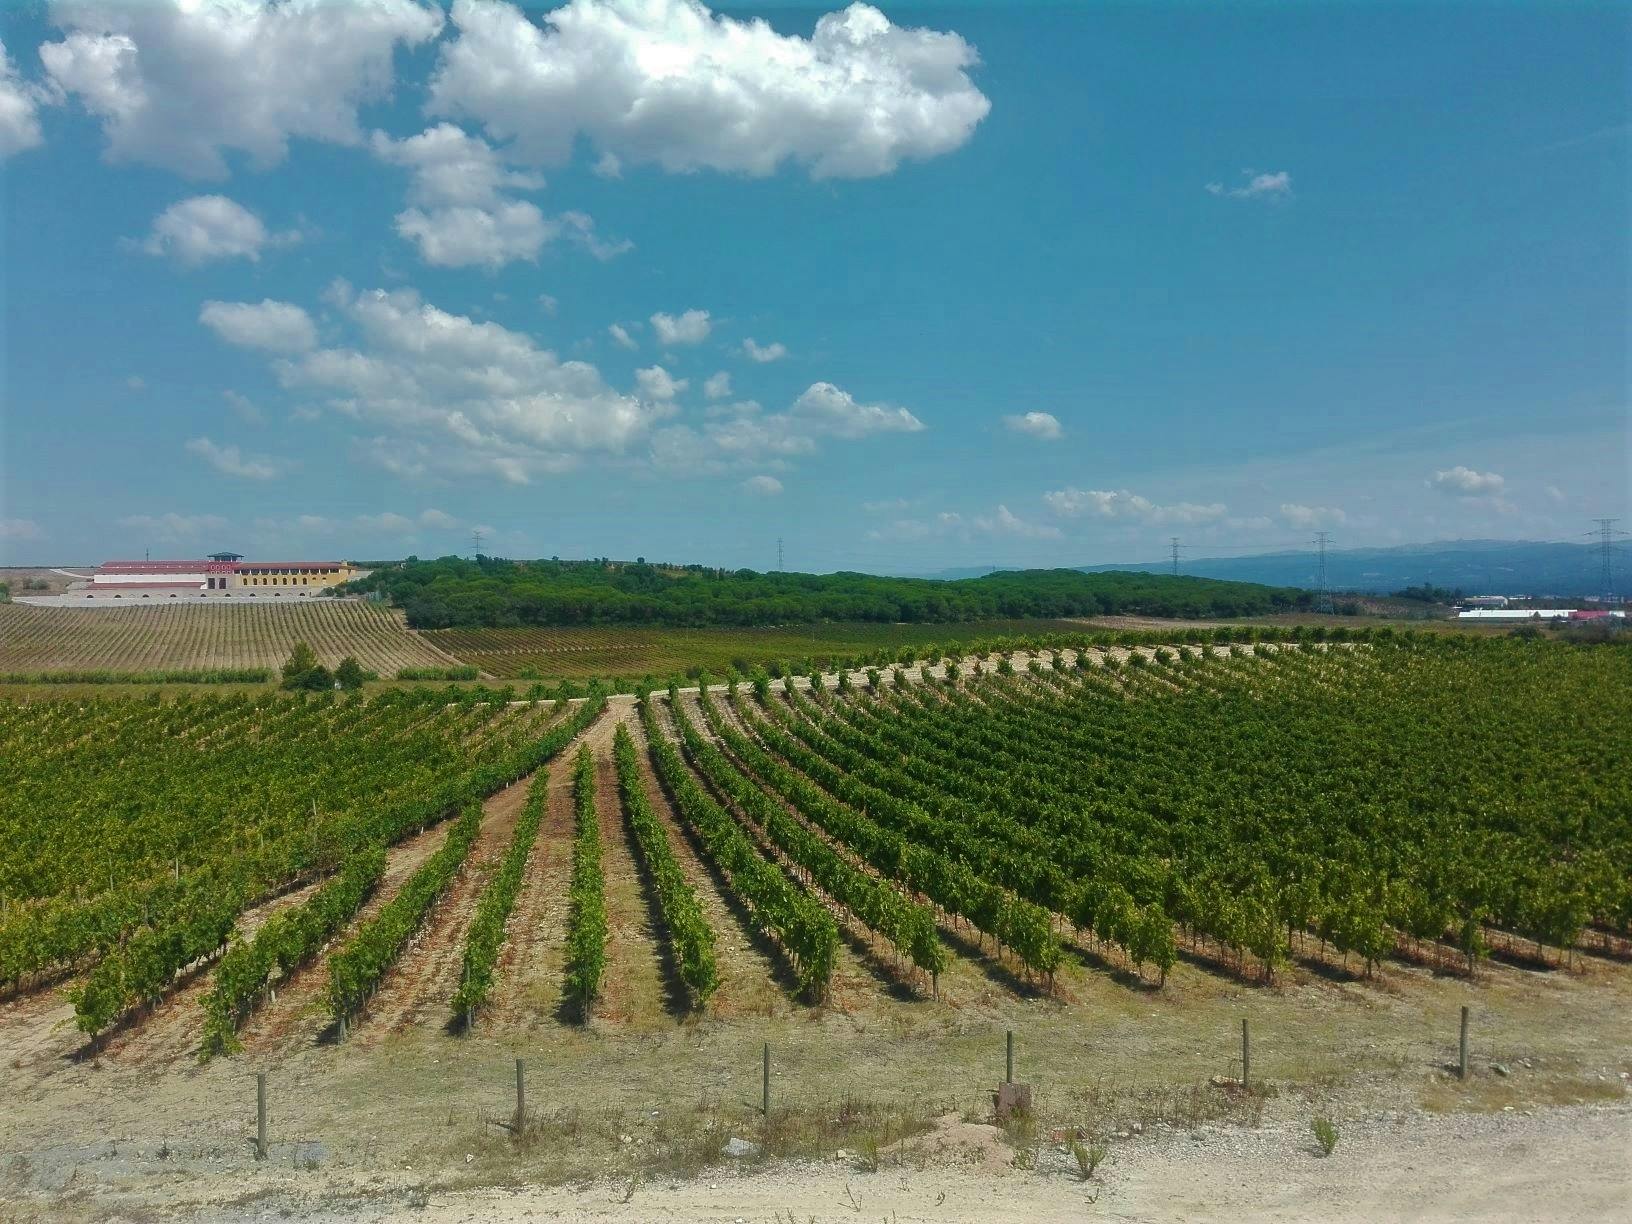 Experiencia en la ruta del vino Bairrada con degustación de vinos y almuerzo.